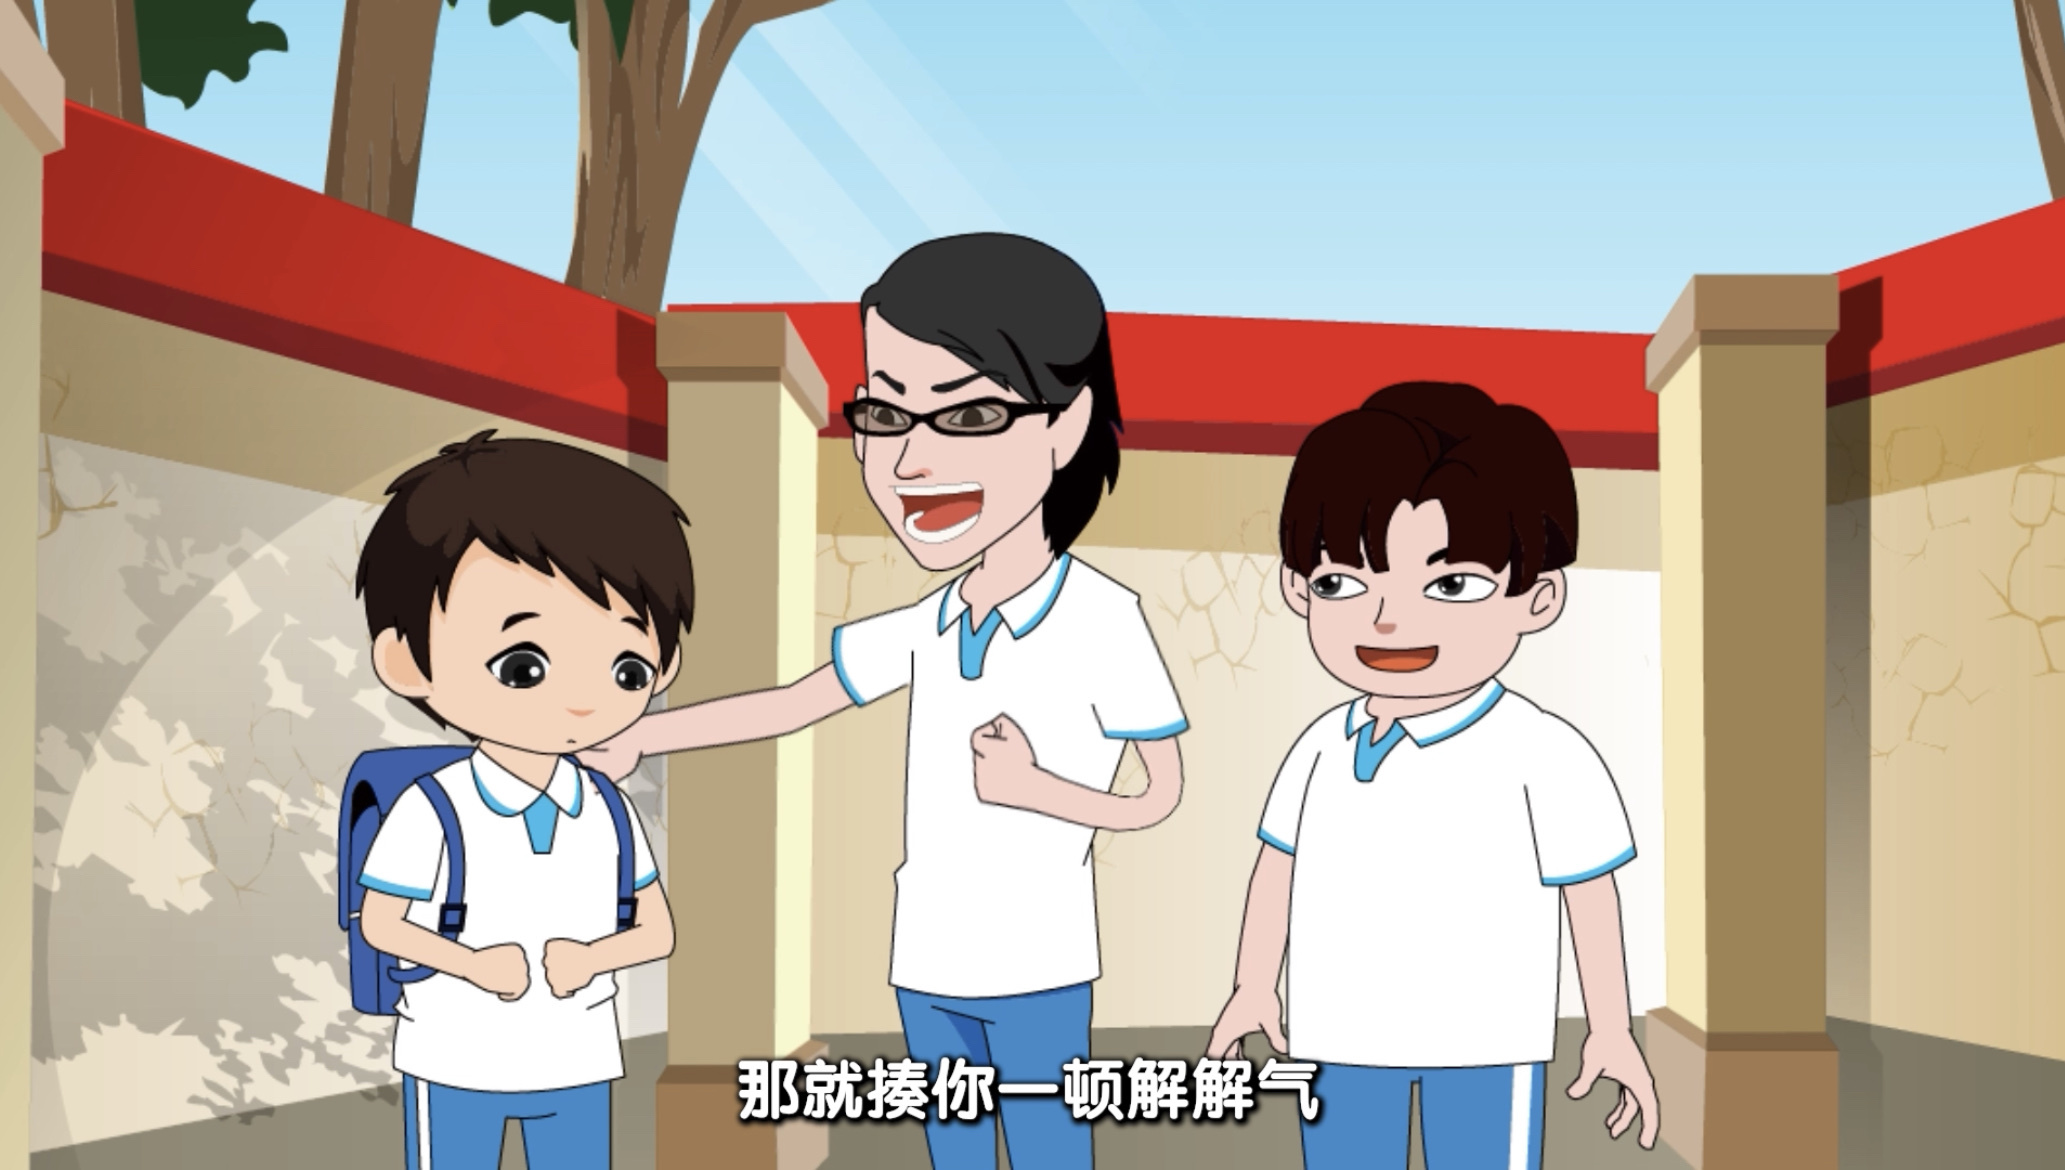 视频 | 文昌法院“椰宝大护法”护苗公益动画短片上线